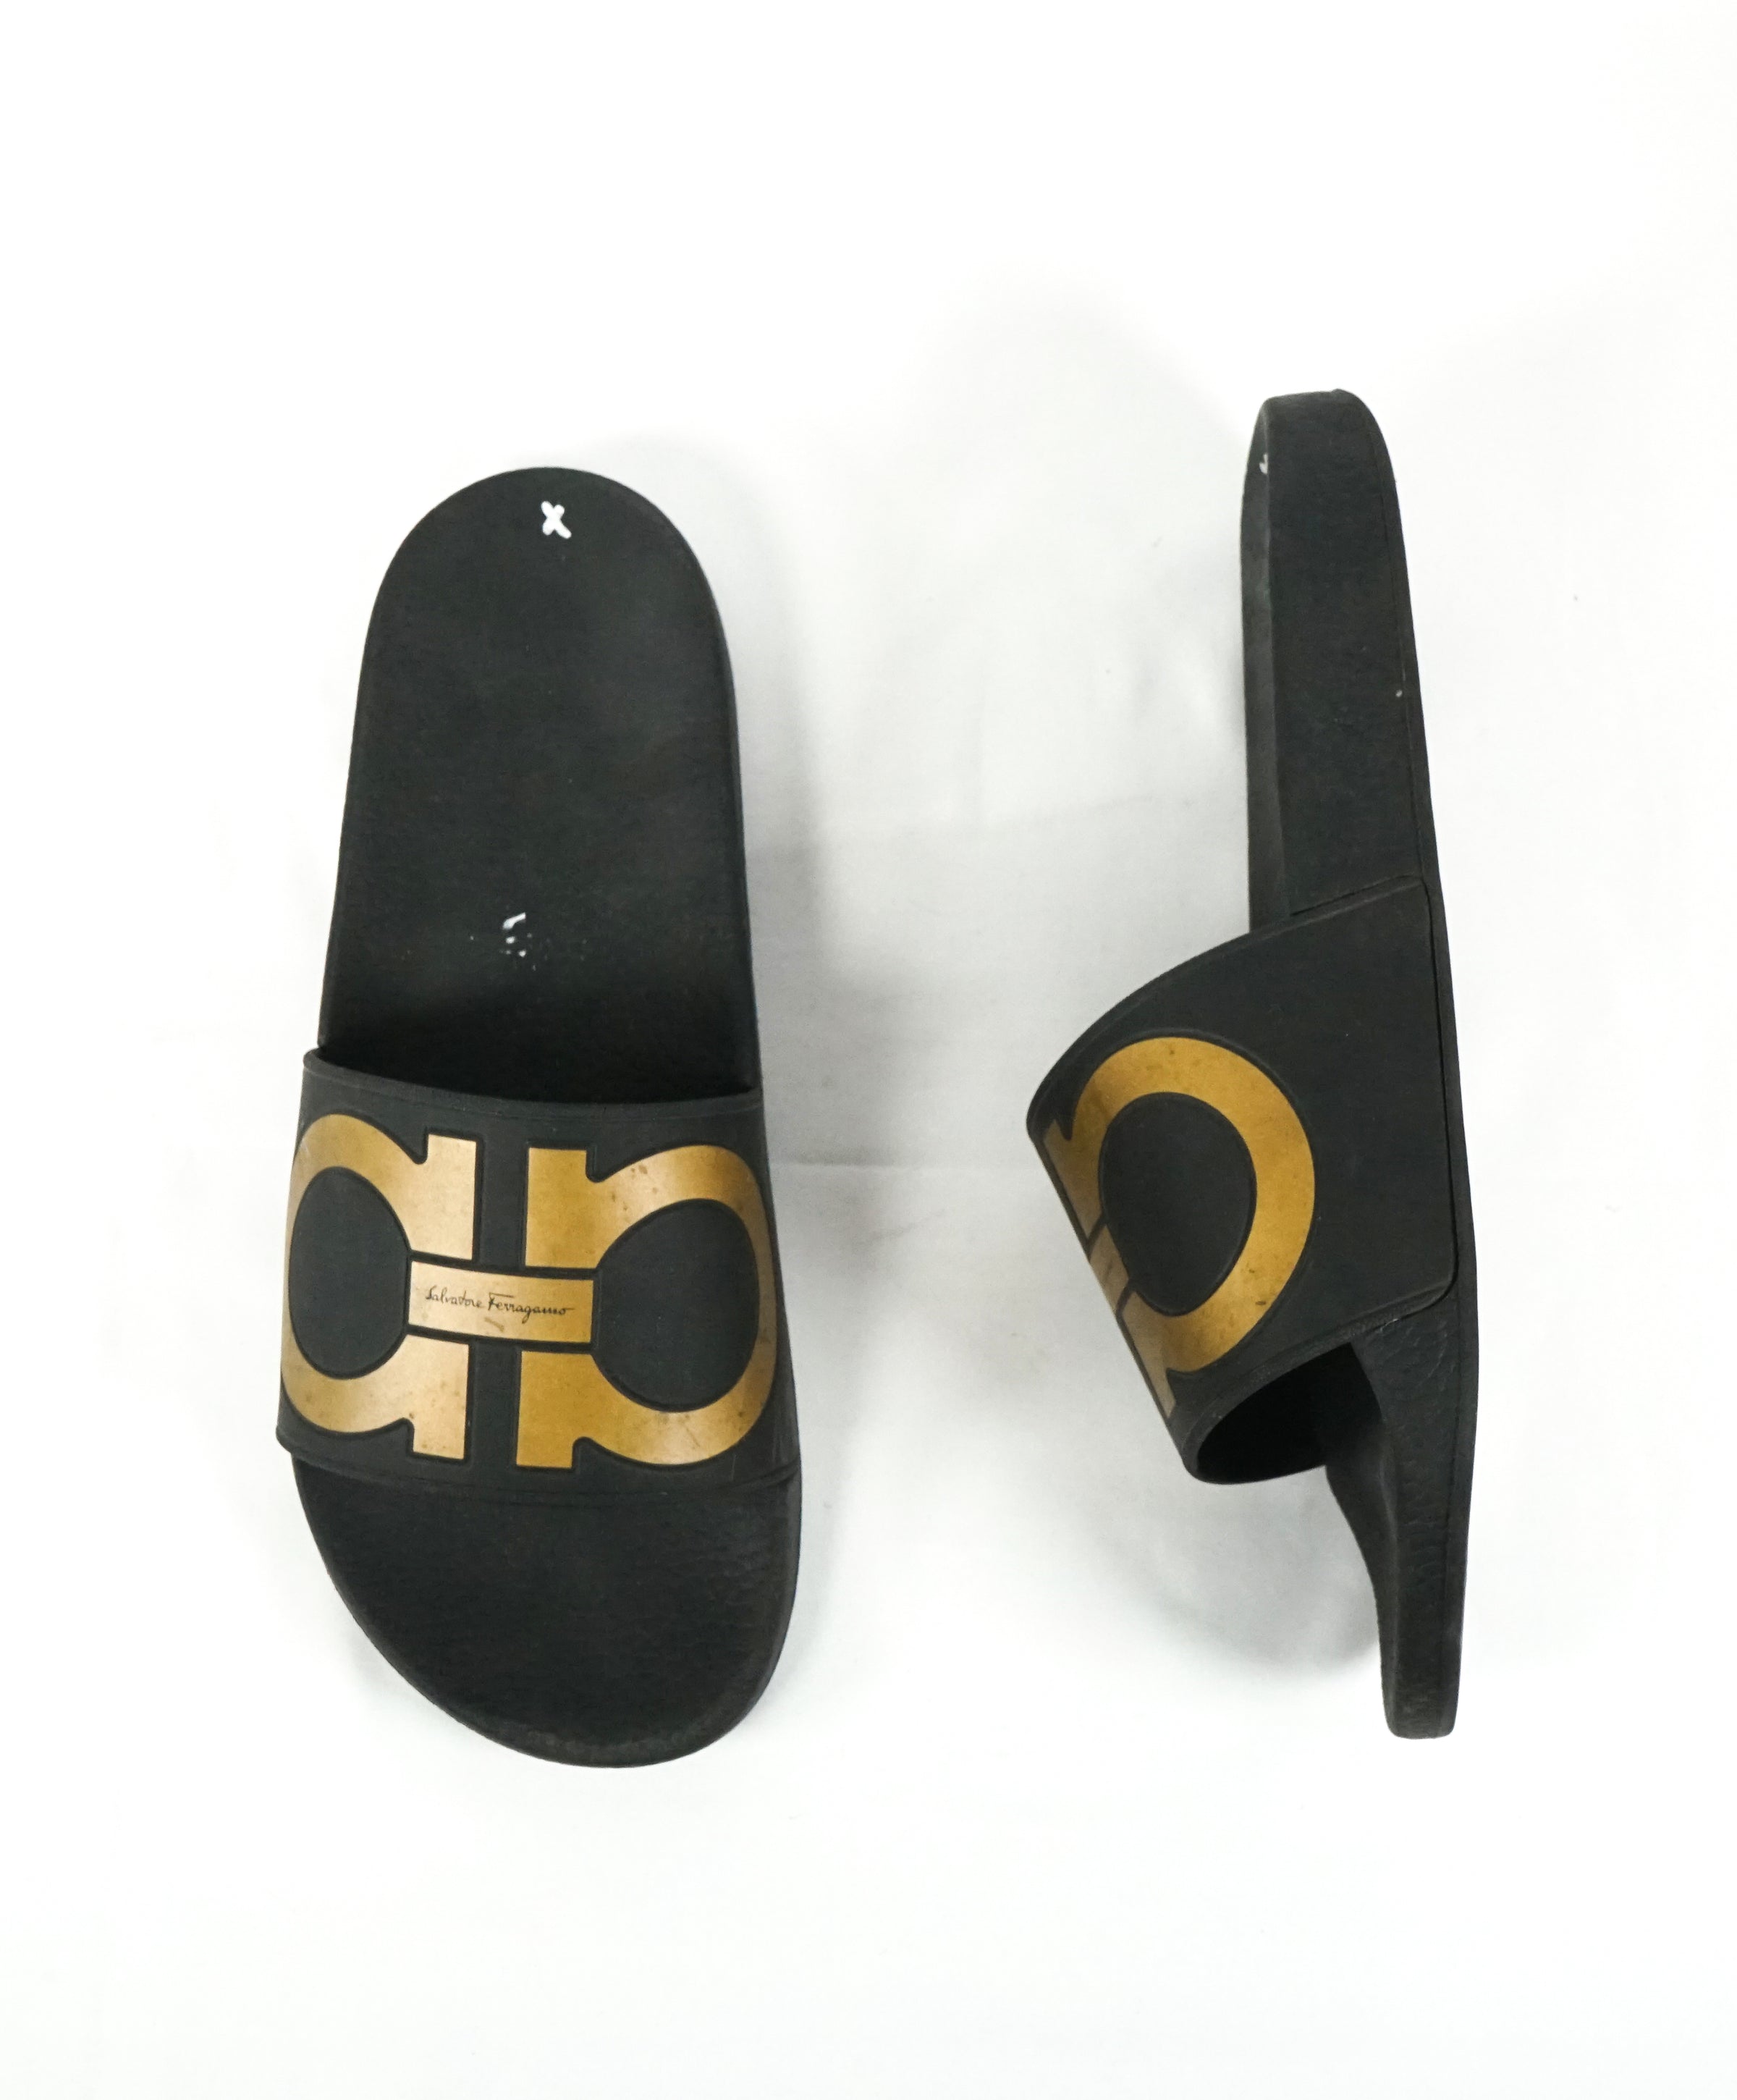 Salvatore Ferragamo Men's Black/Gold Groove 2 cm Slides Sandals Size US 11 M